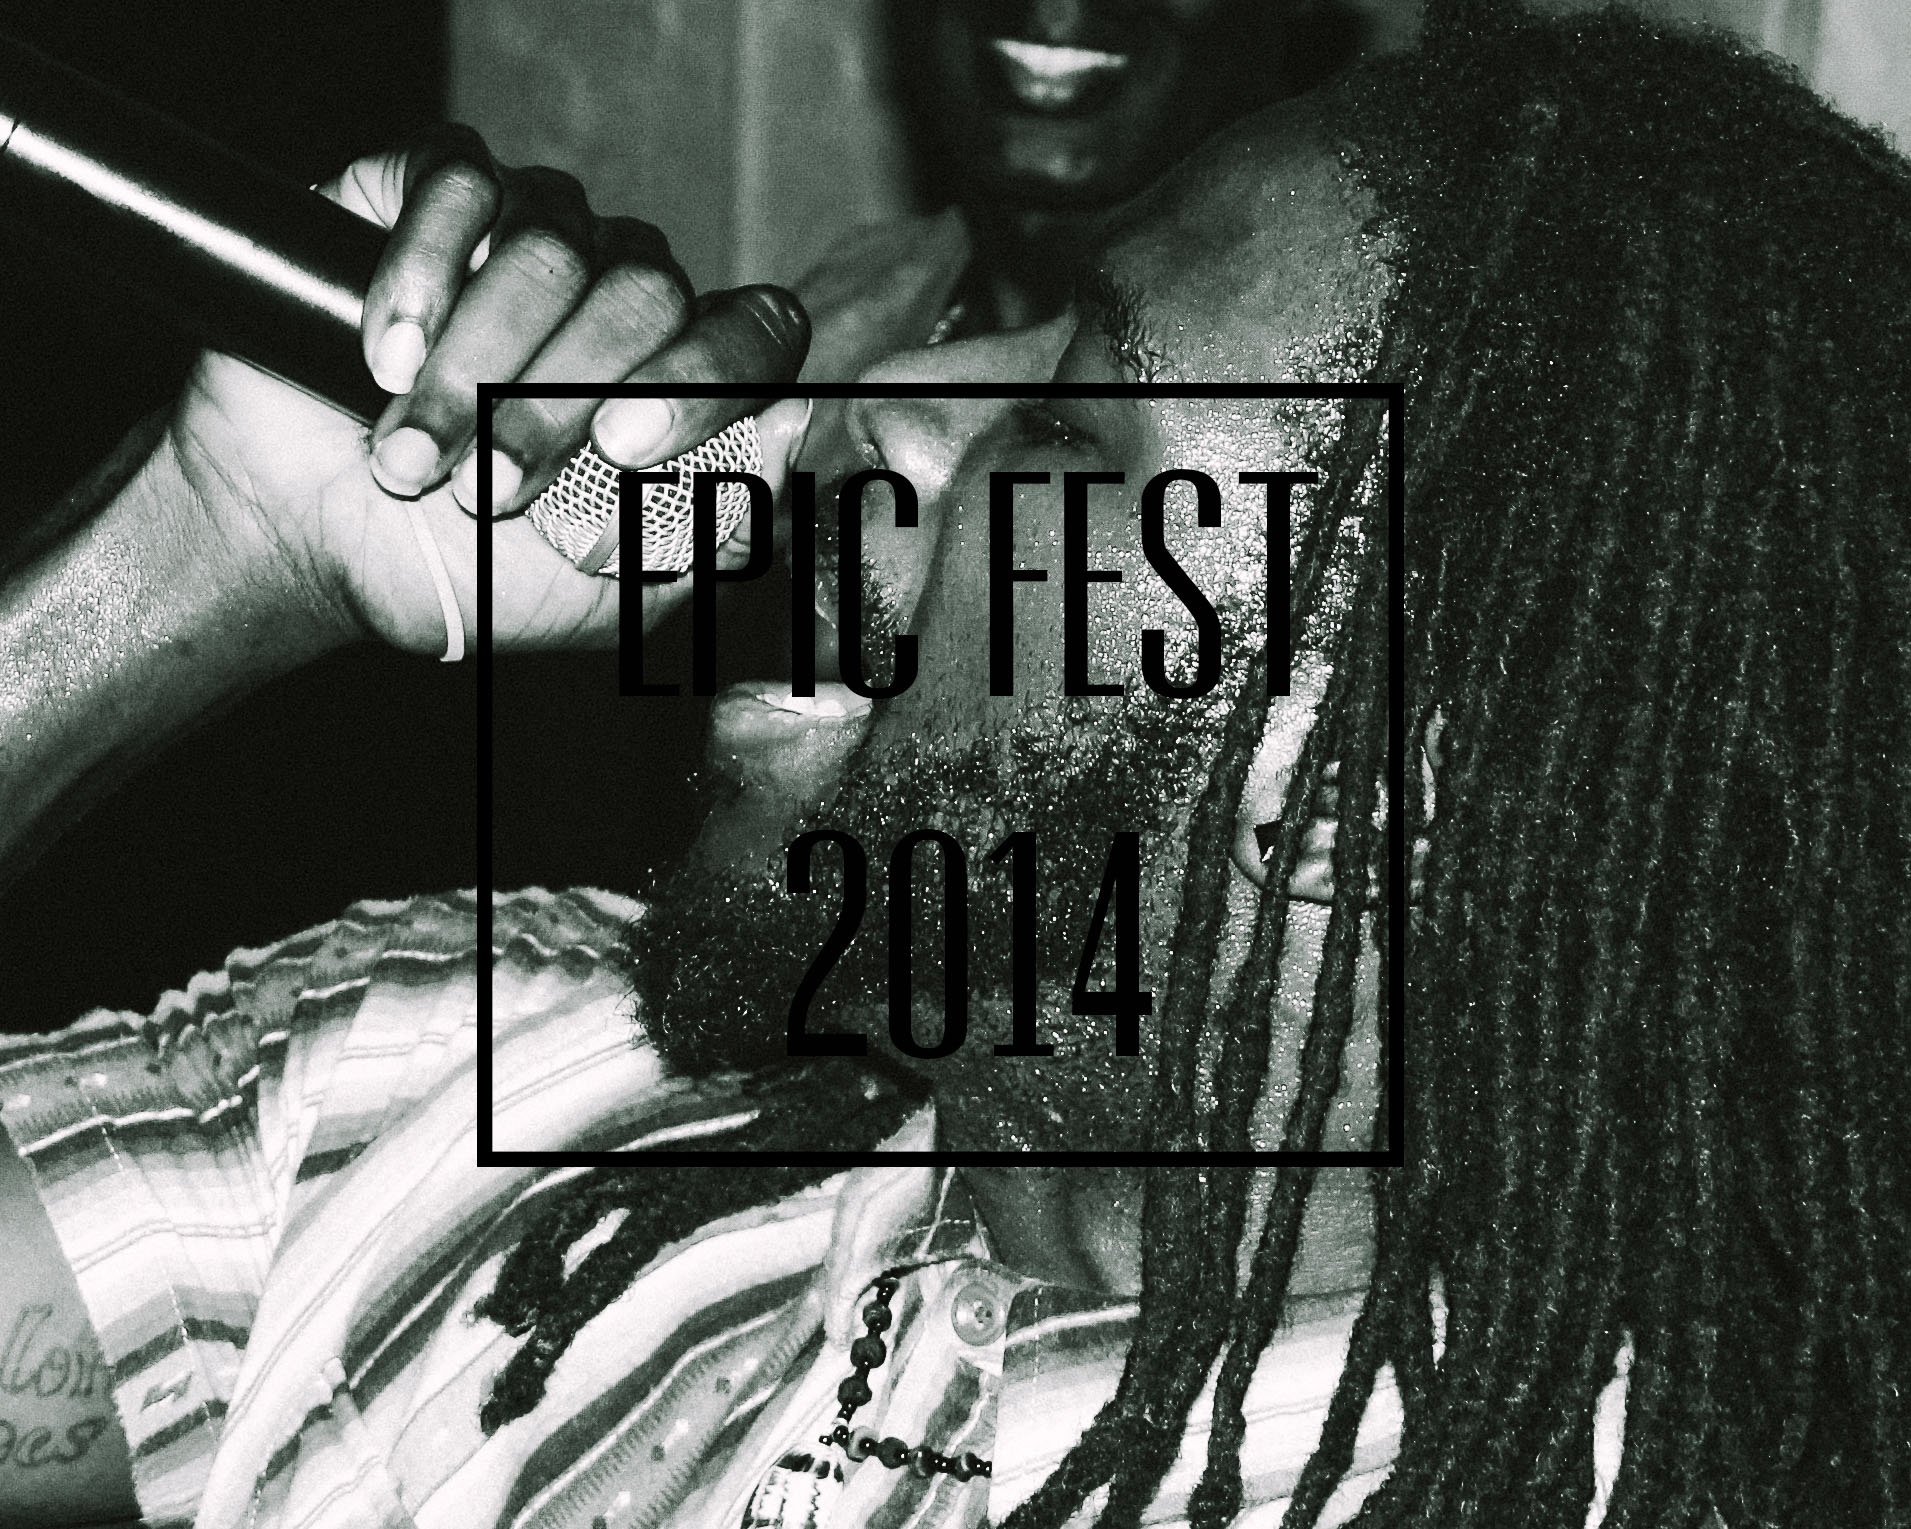 EPIC FEST 2014